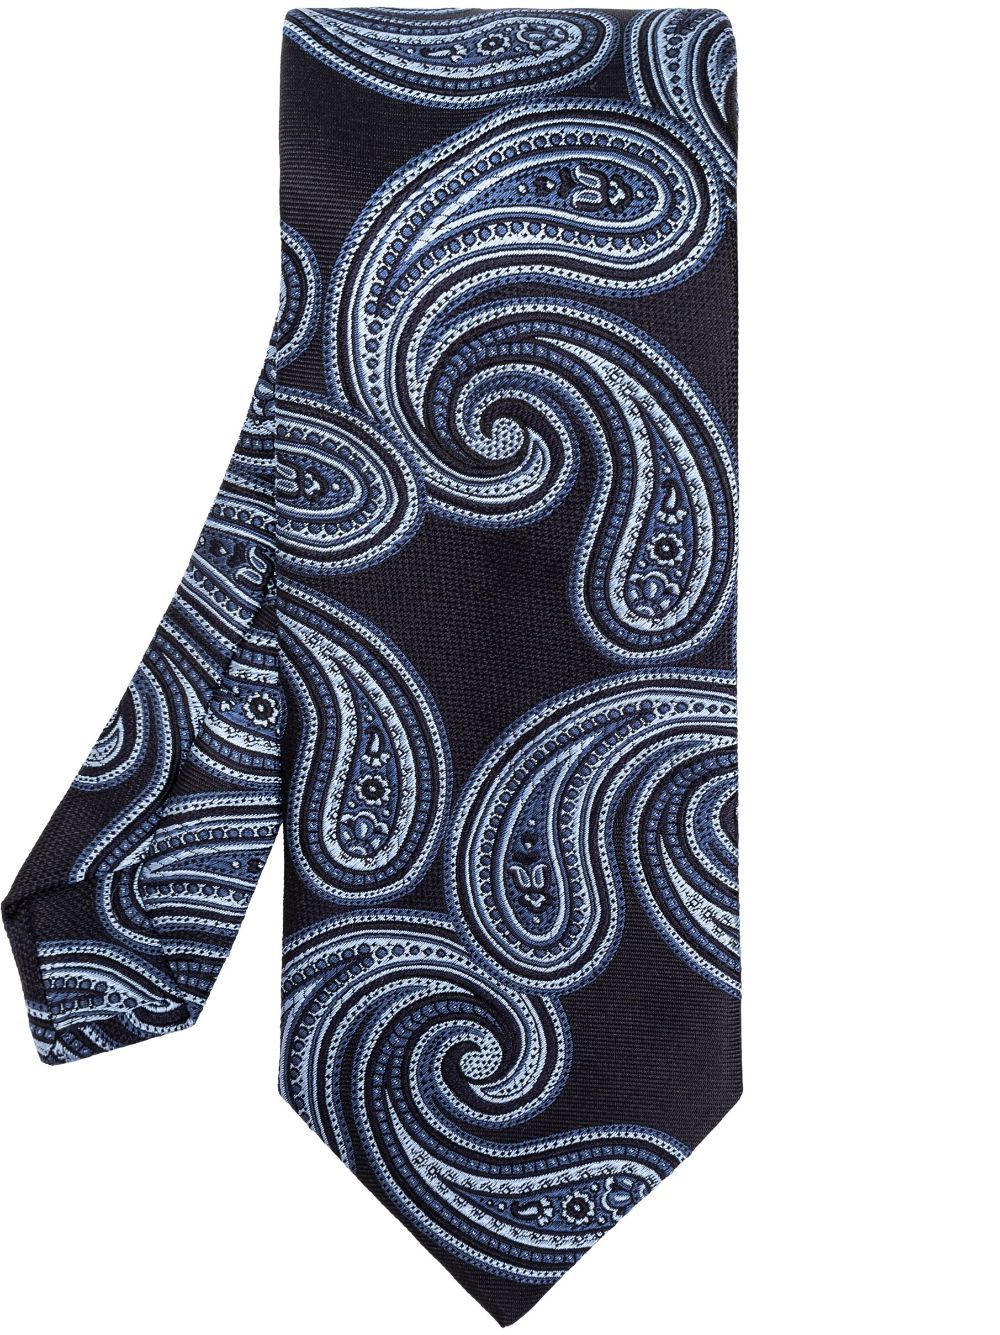 ETRO paisley-jacquard silk tie - Blau